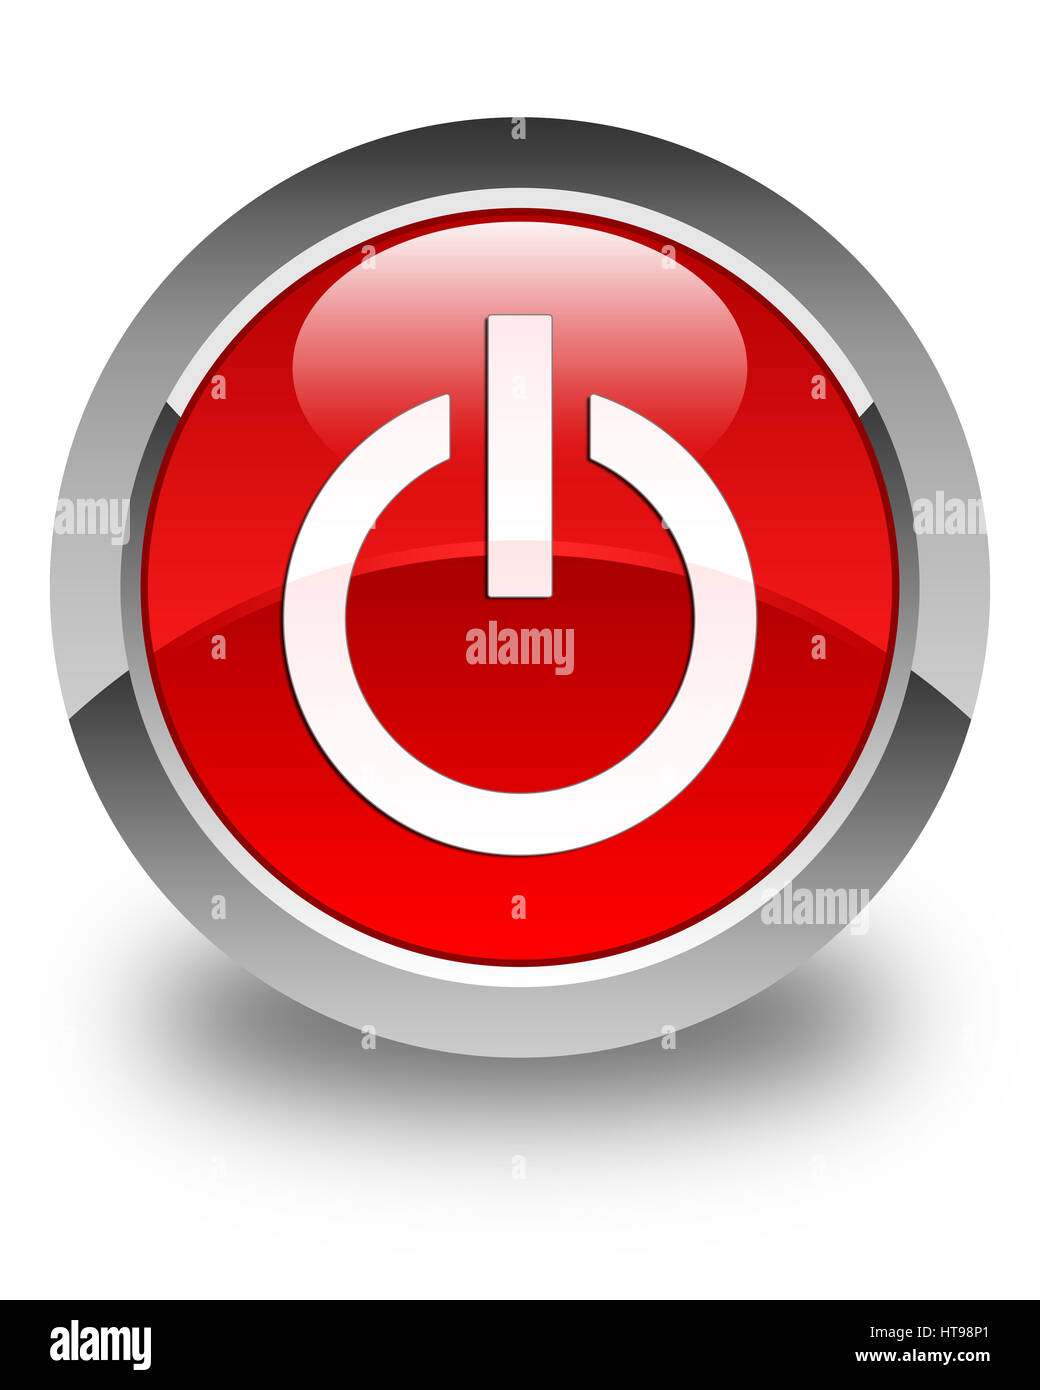 Icône d'alimentation isolé sur le bouton rond rouge brillant abstract illustration Banque D'Images